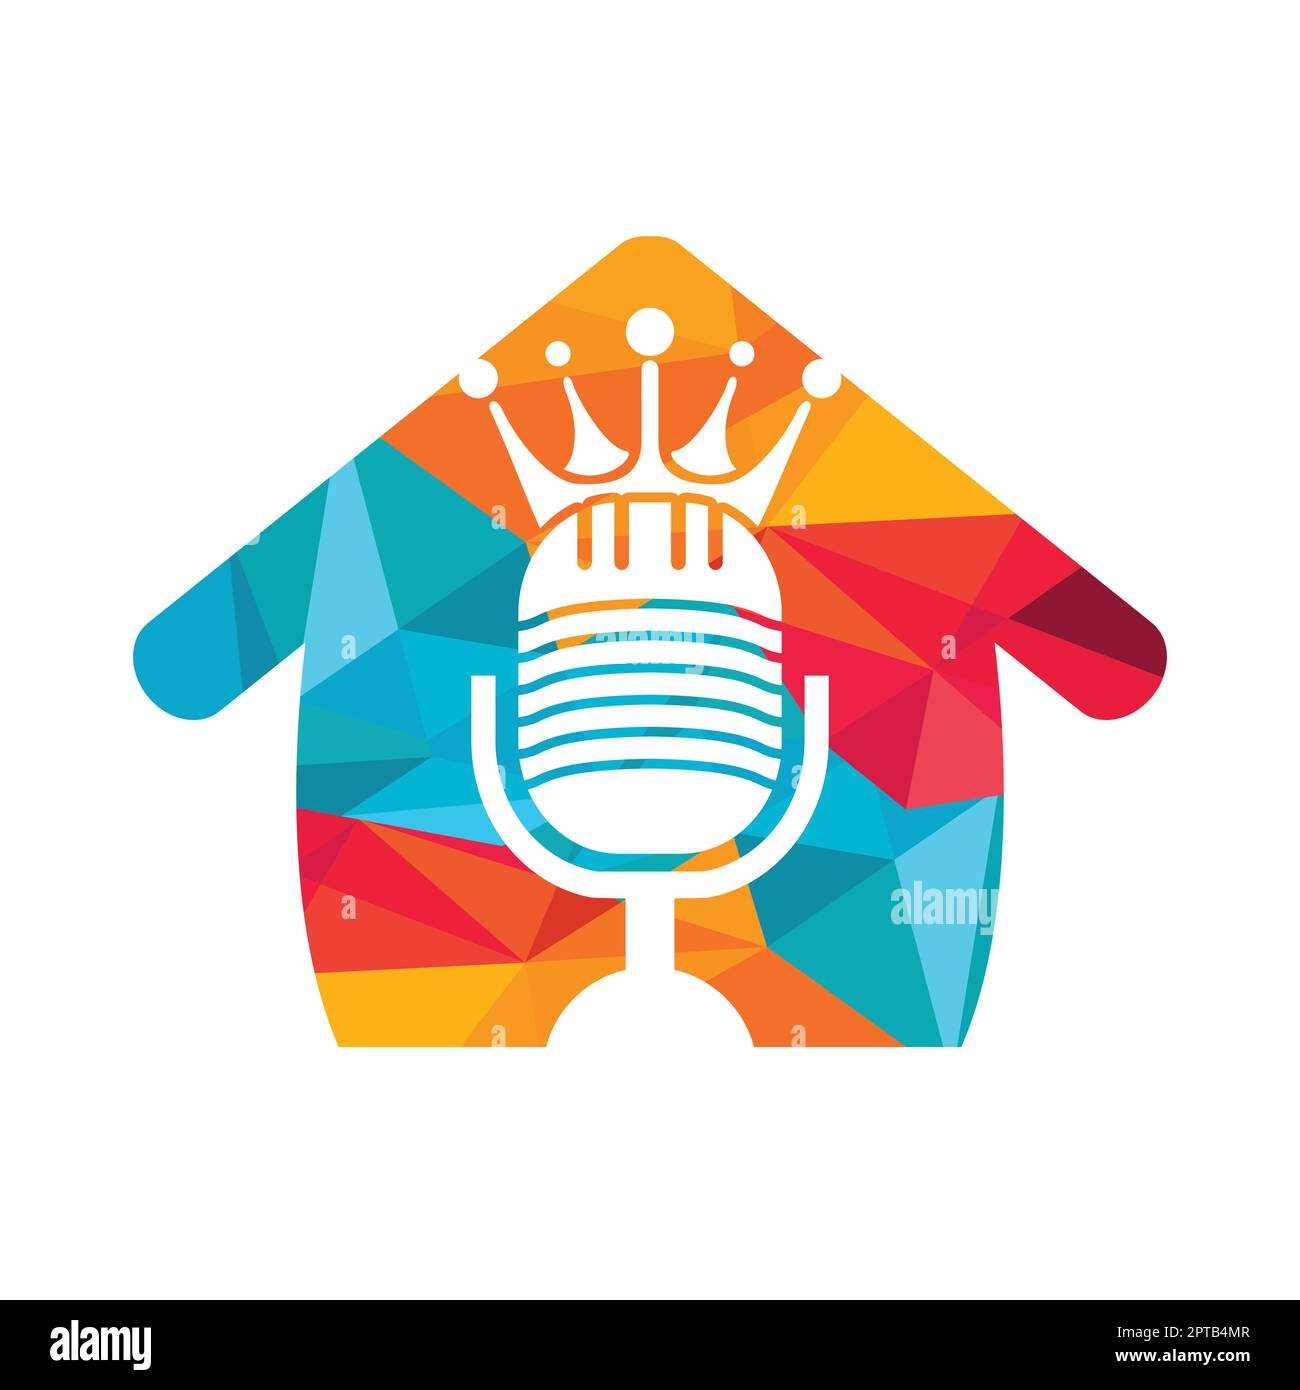 Podcast king disegno del logo vettoriale. Concetto di design con logo musicale king size. Illustrazione Vettoriale